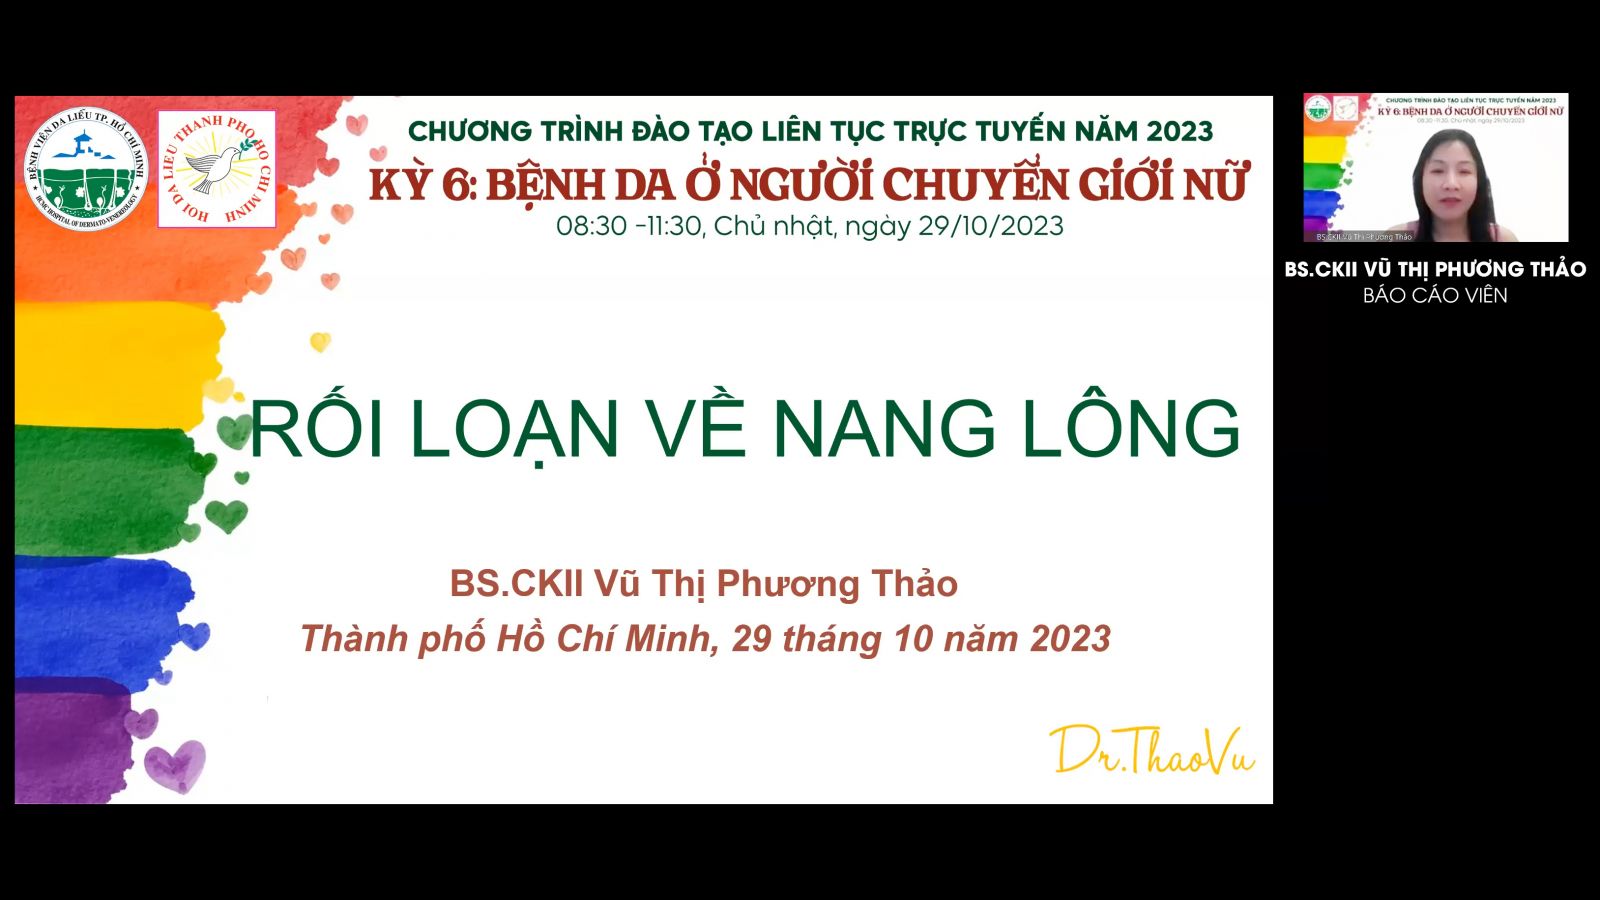 bvdl-truyen-thong-sau-dt-lch-ky-6-2023-4